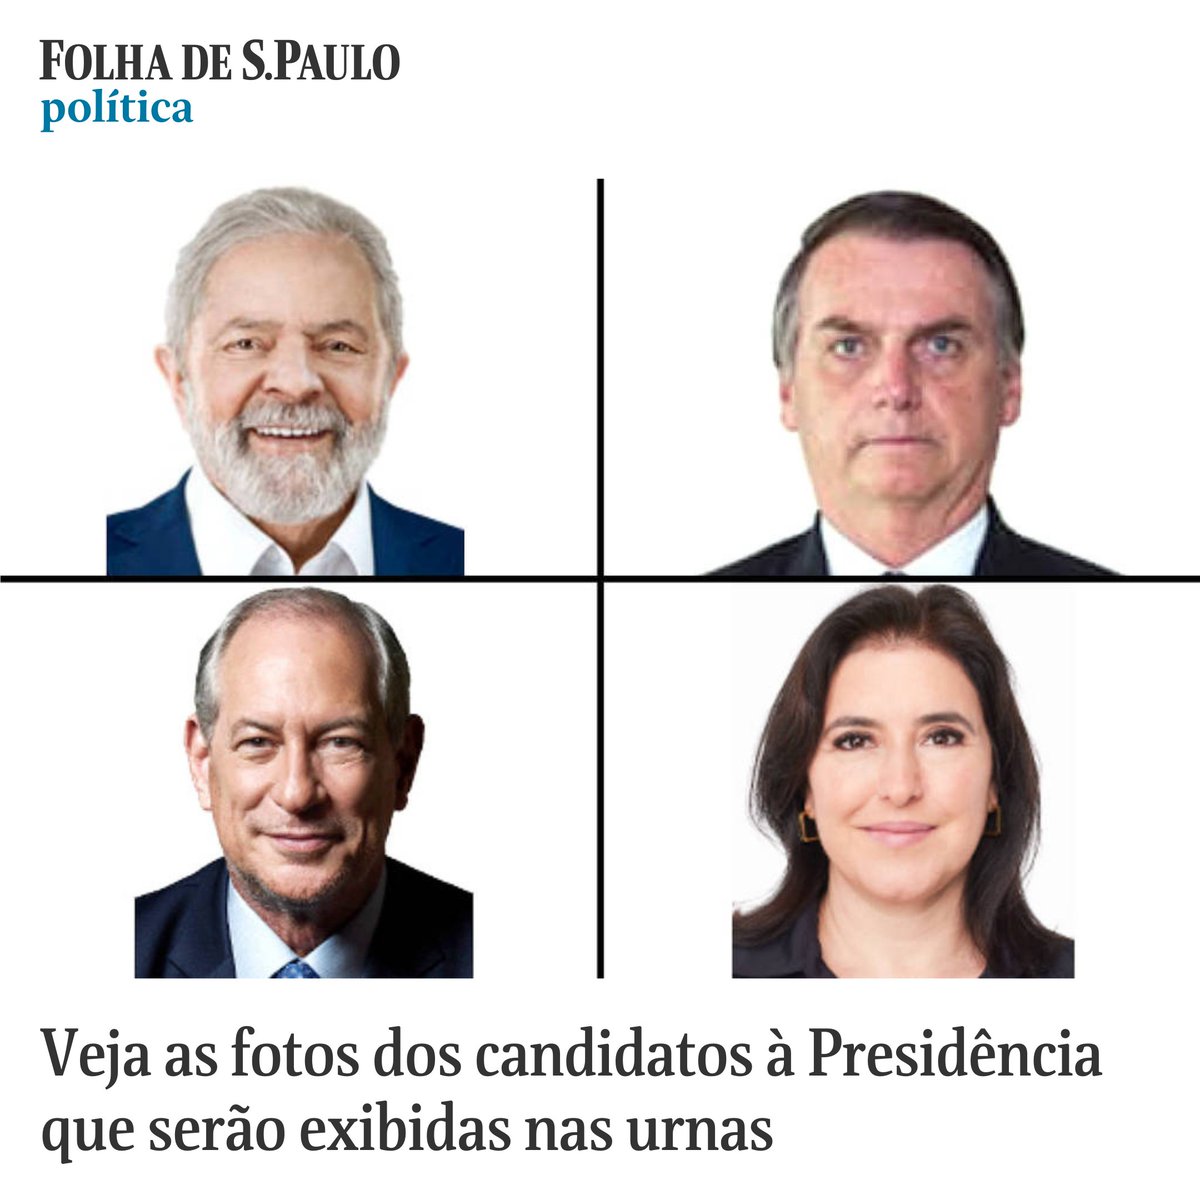 Folha De Spaulo On Twitter Veja As Fotos Dos Candidatos à Presidência Que Serão Exibidas Nas 